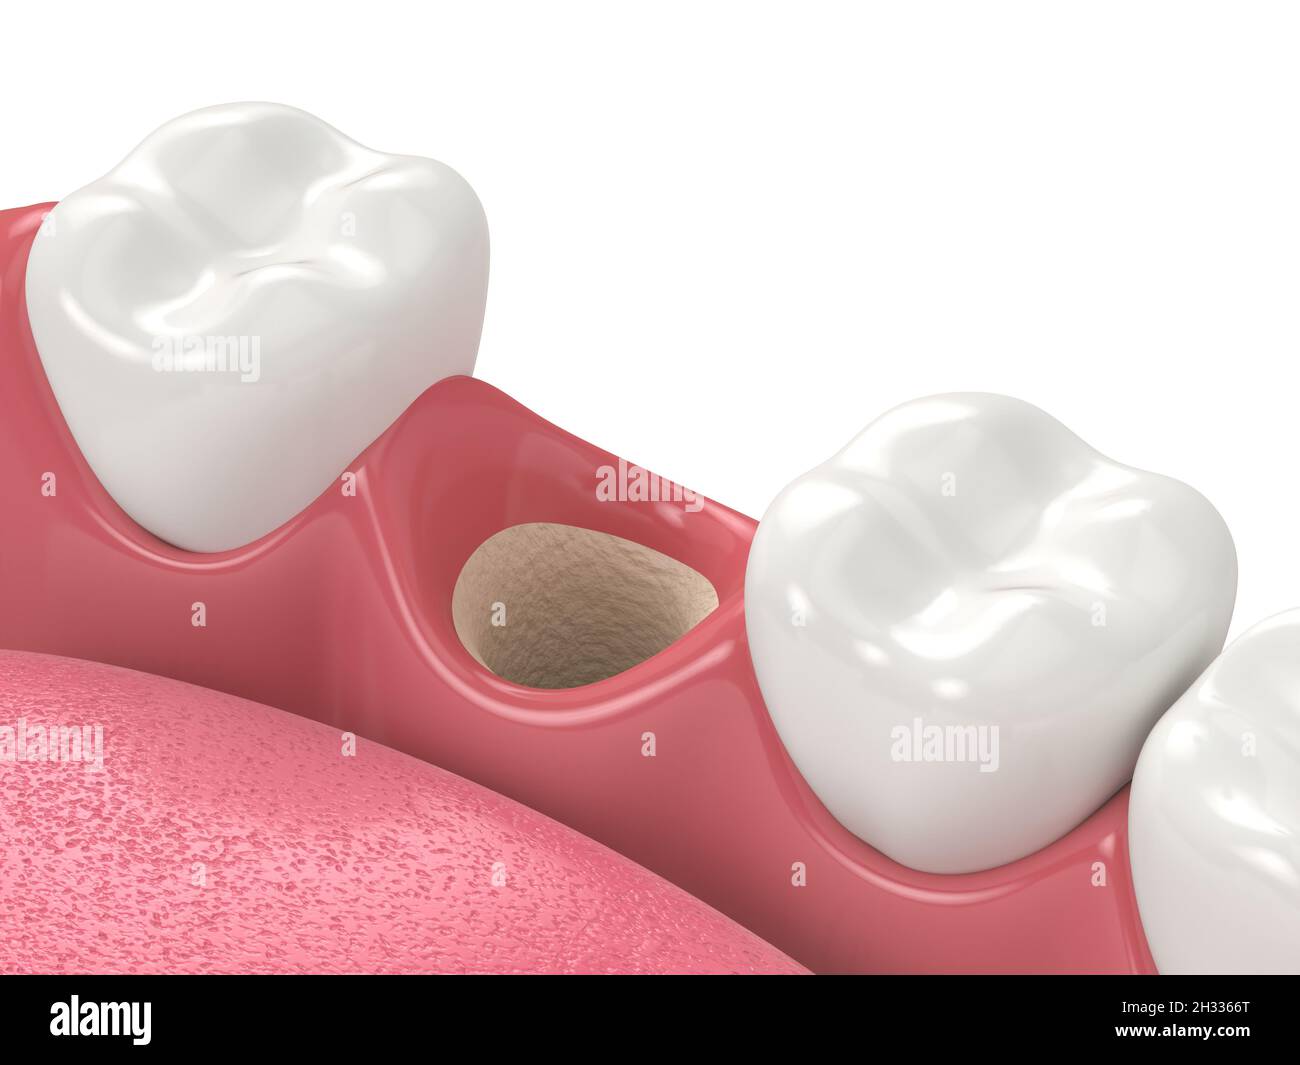 Rendu 3D de la mâchoire avec prise vide prête à la greffe osseuse.Notion : augmentation osseuse de la mâchoire. Banque D'Images